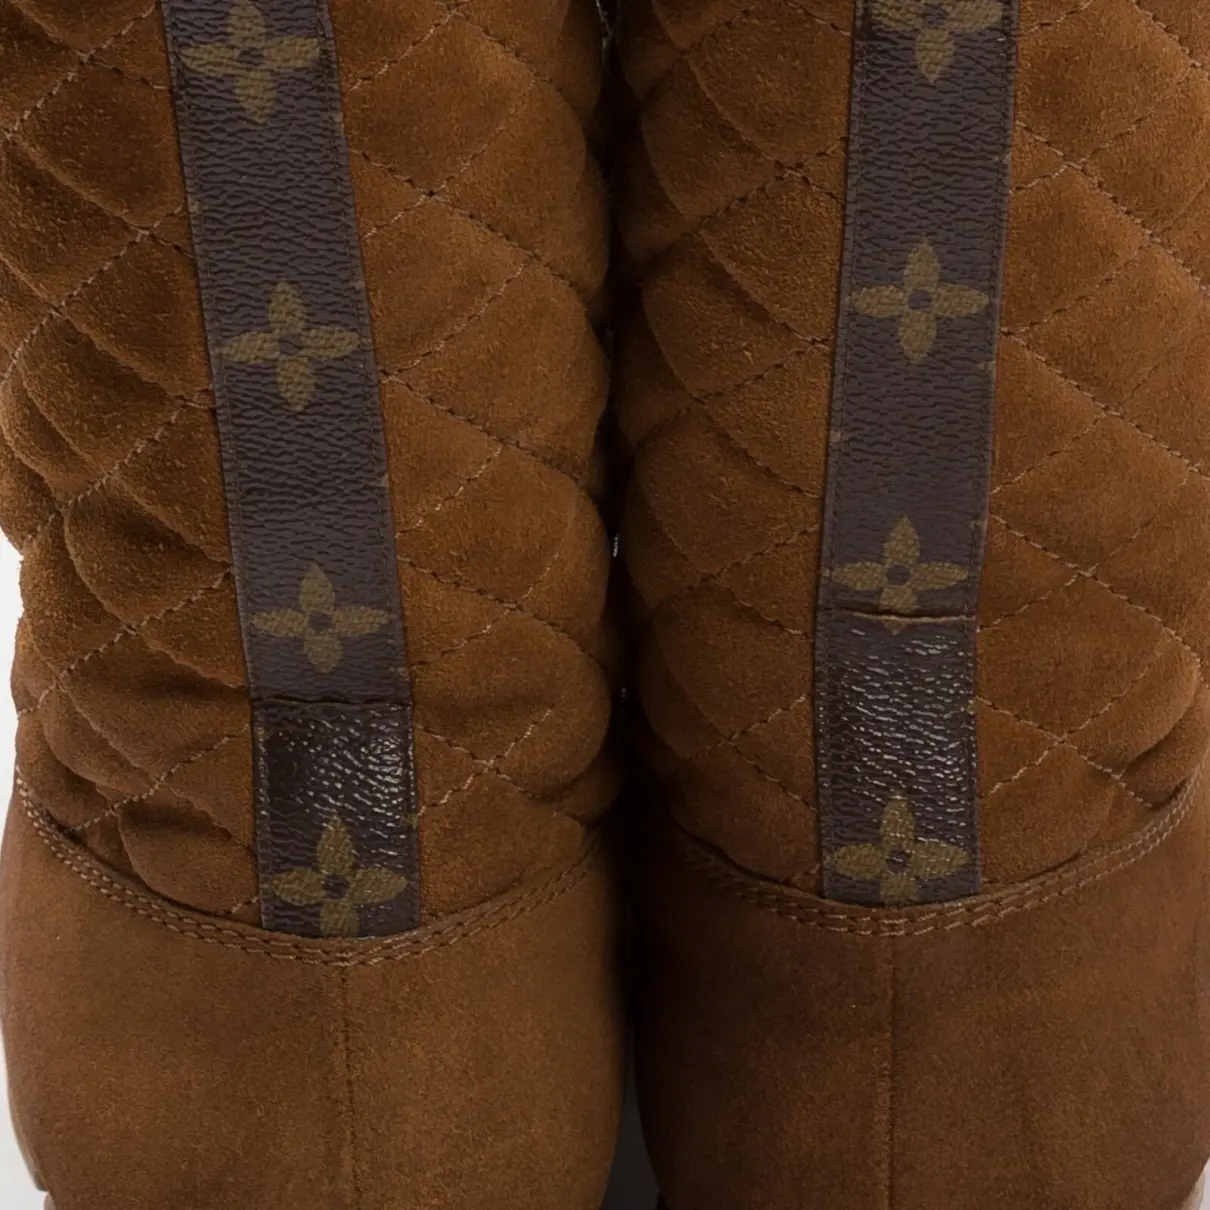 Buy Louis Vuitton Snow boots online